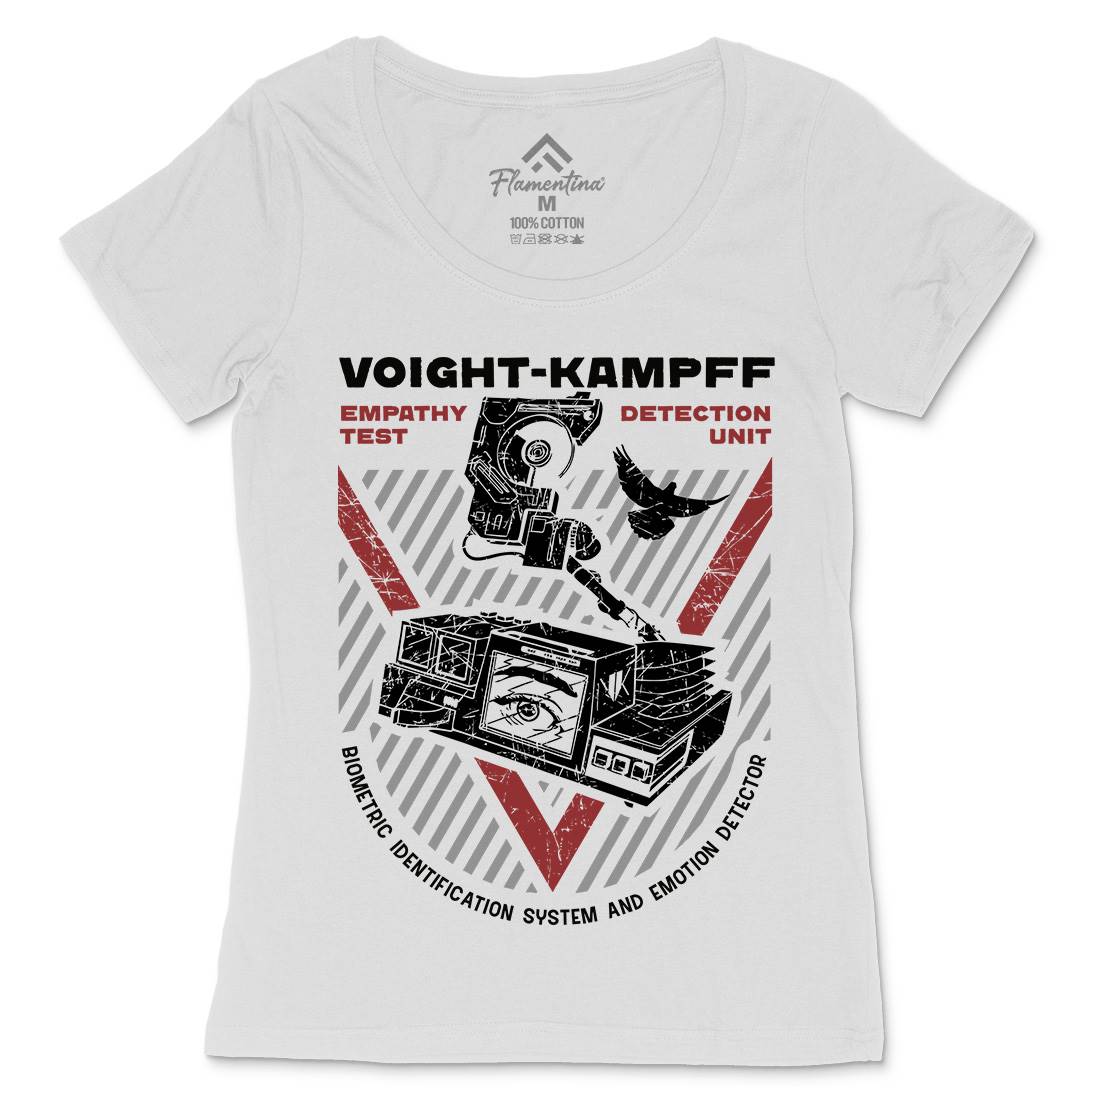 Voight Kampff Womens Scoop Neck T-Shirt Space D175